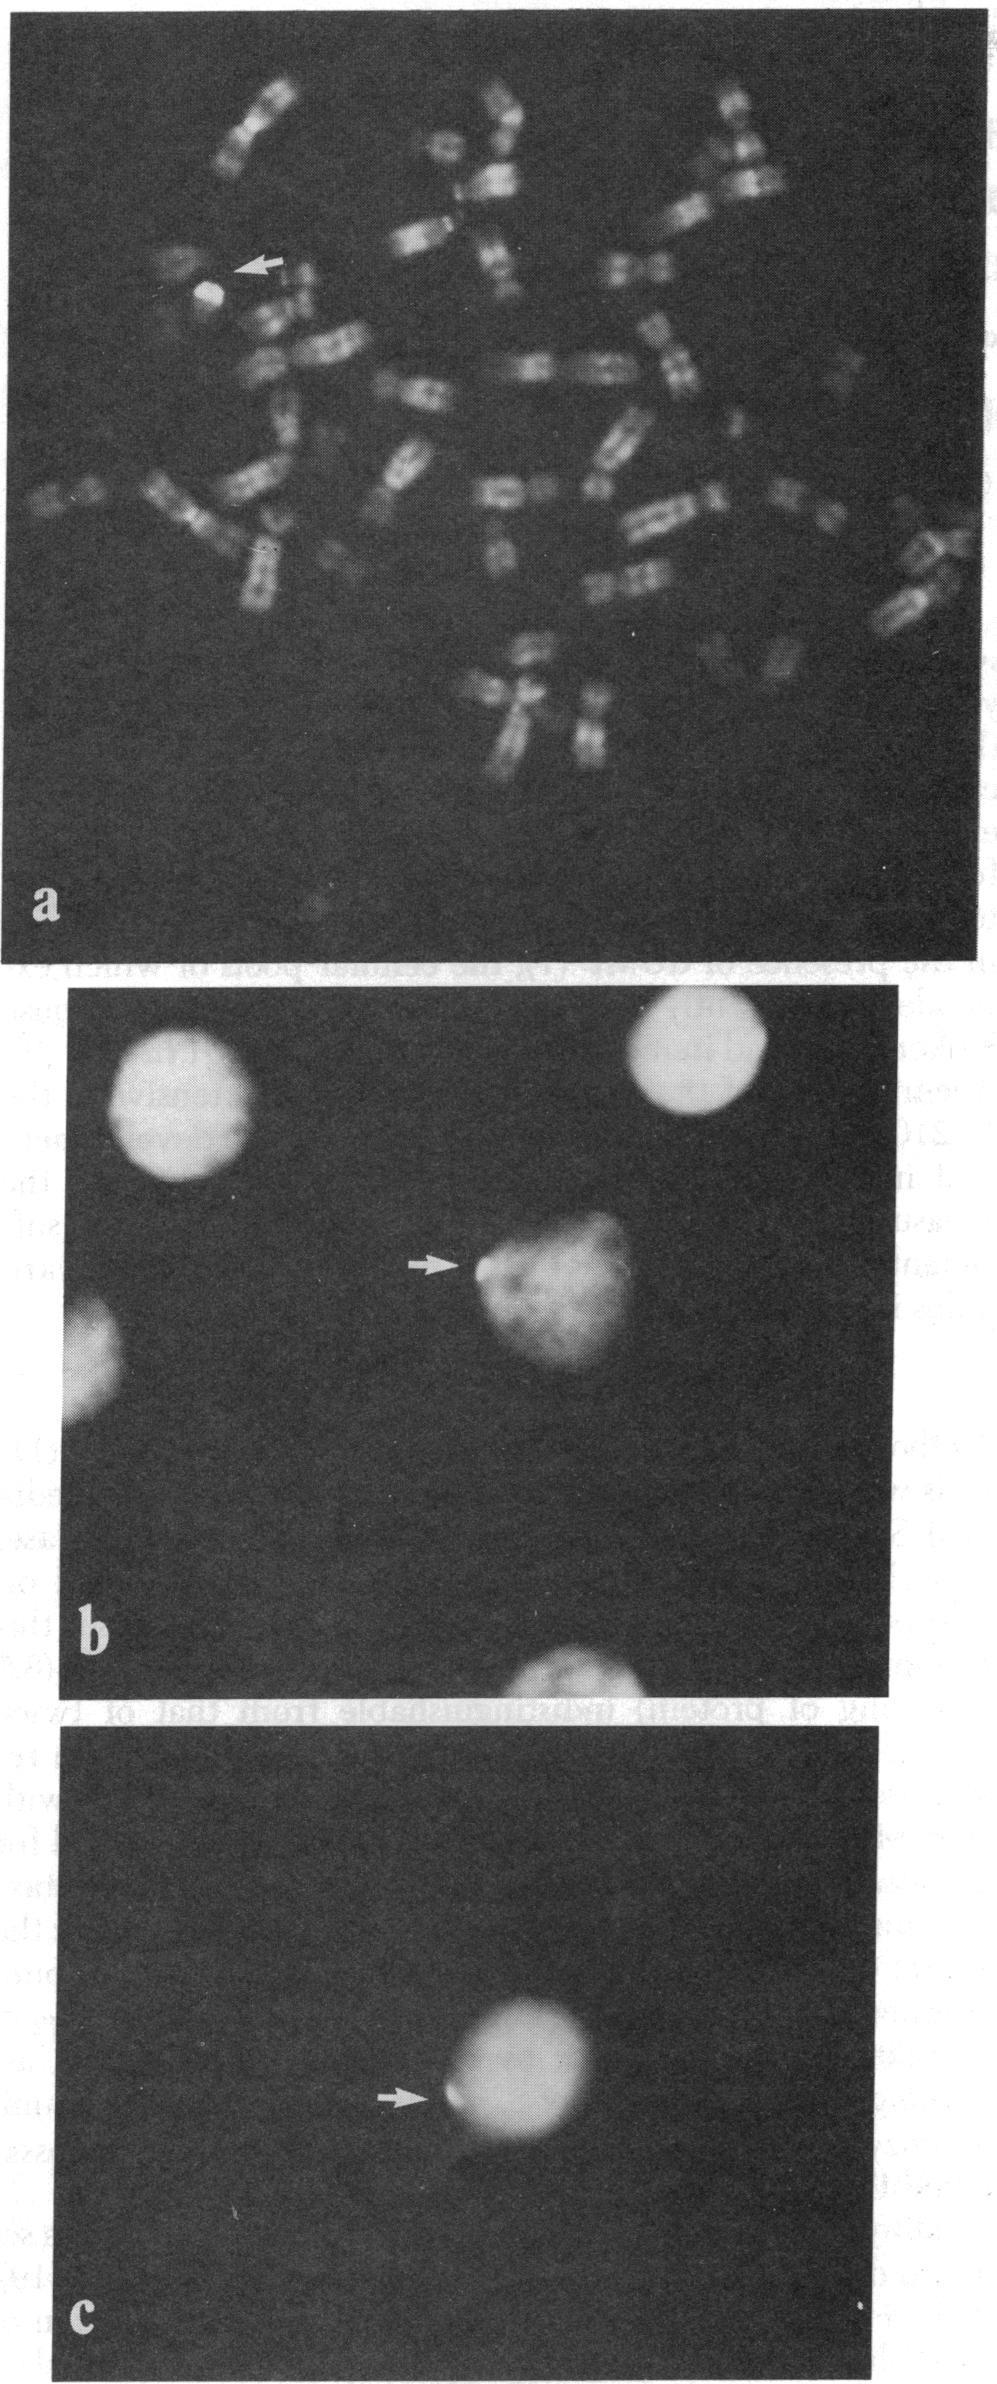 3.3 Contexto Histórico Em 1969, foi reportado (Walknowska et al.) 3, pela primeira vez, a capacidade de recuperar e identificar células fetais provenientes do sangue materno.